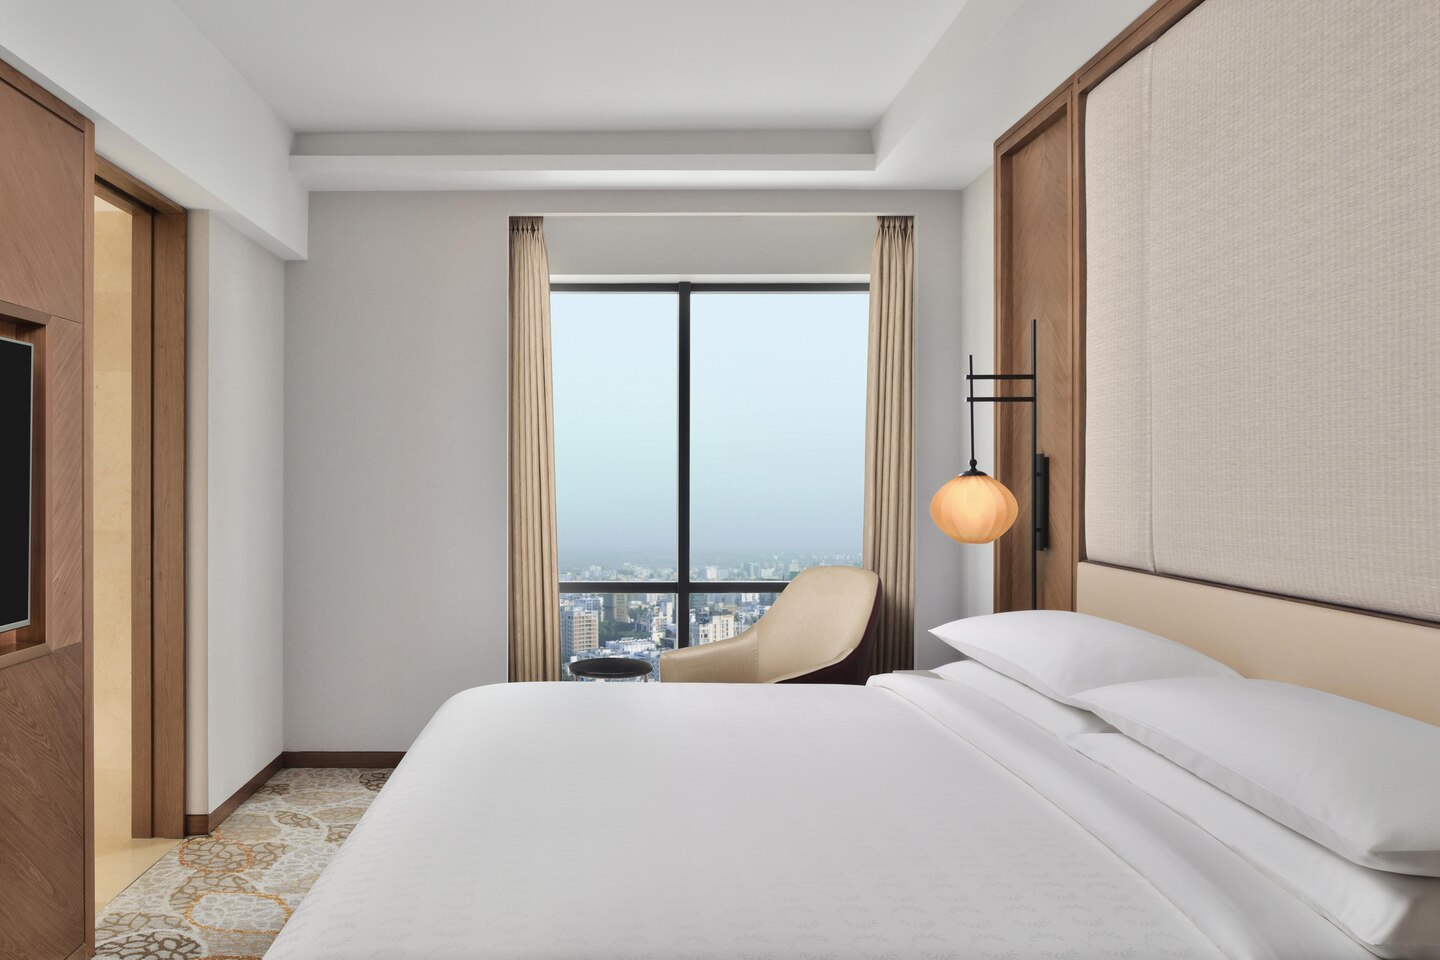 チャイナホテルプロジェクトクイーンホテルベッドルームファクトリーモダンデザイン魅力的なホテル家具